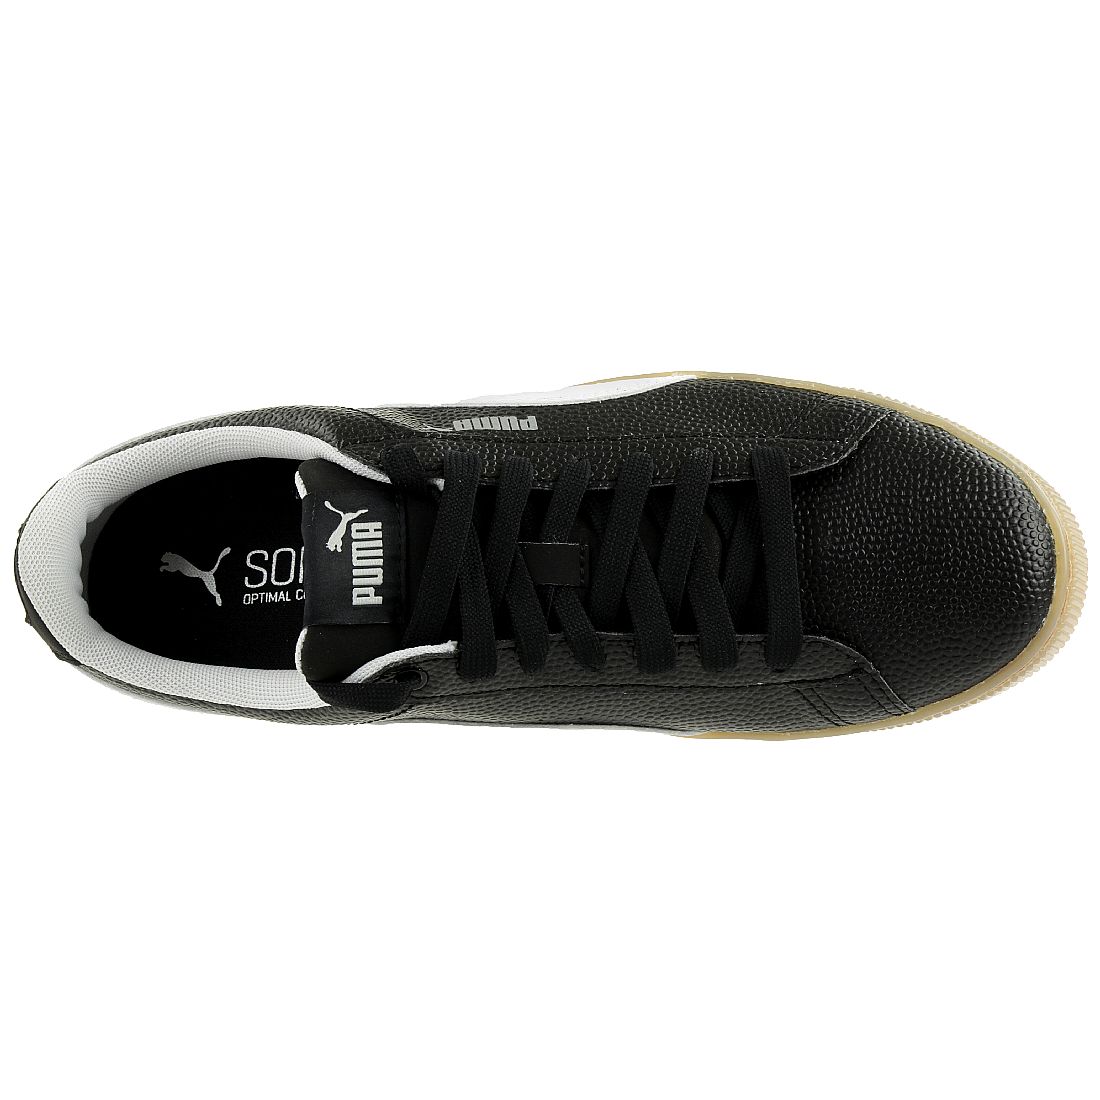 Puma Vikky Platform VT Sneaker Damen Schuhe 366805 02 schwarz